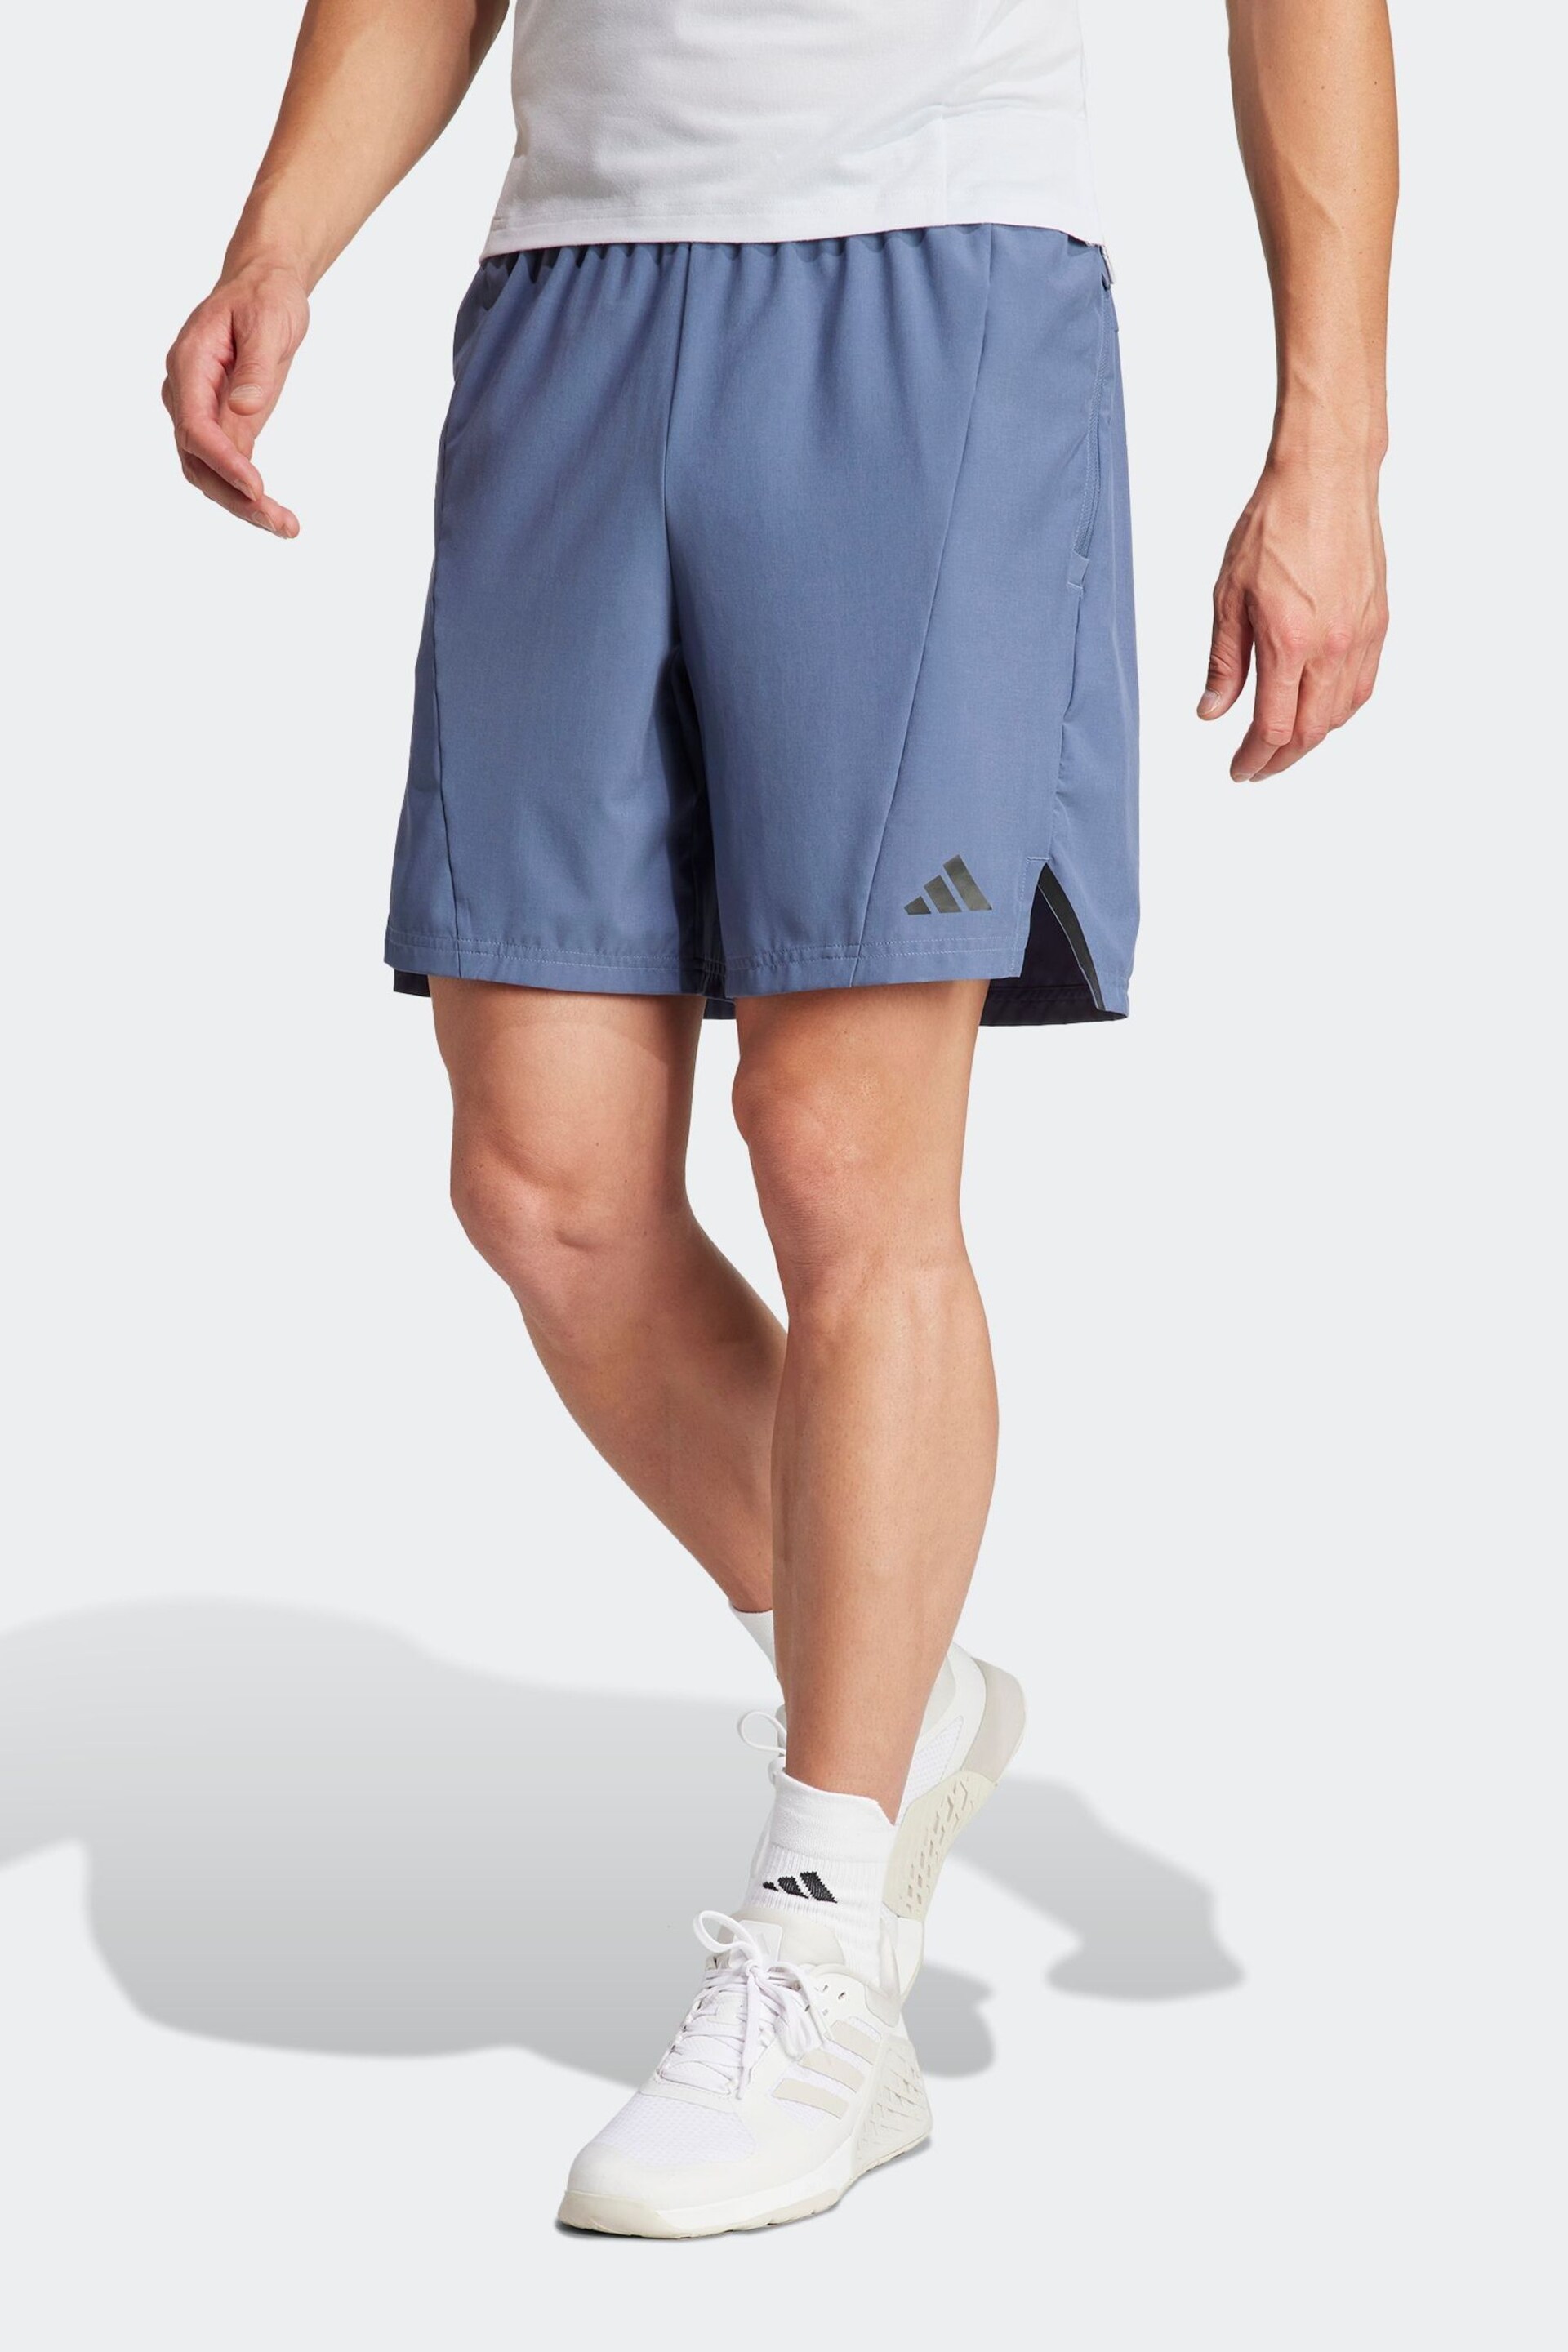 adidas Blue Designed for Training Workout Shorts - Image 1 of 6